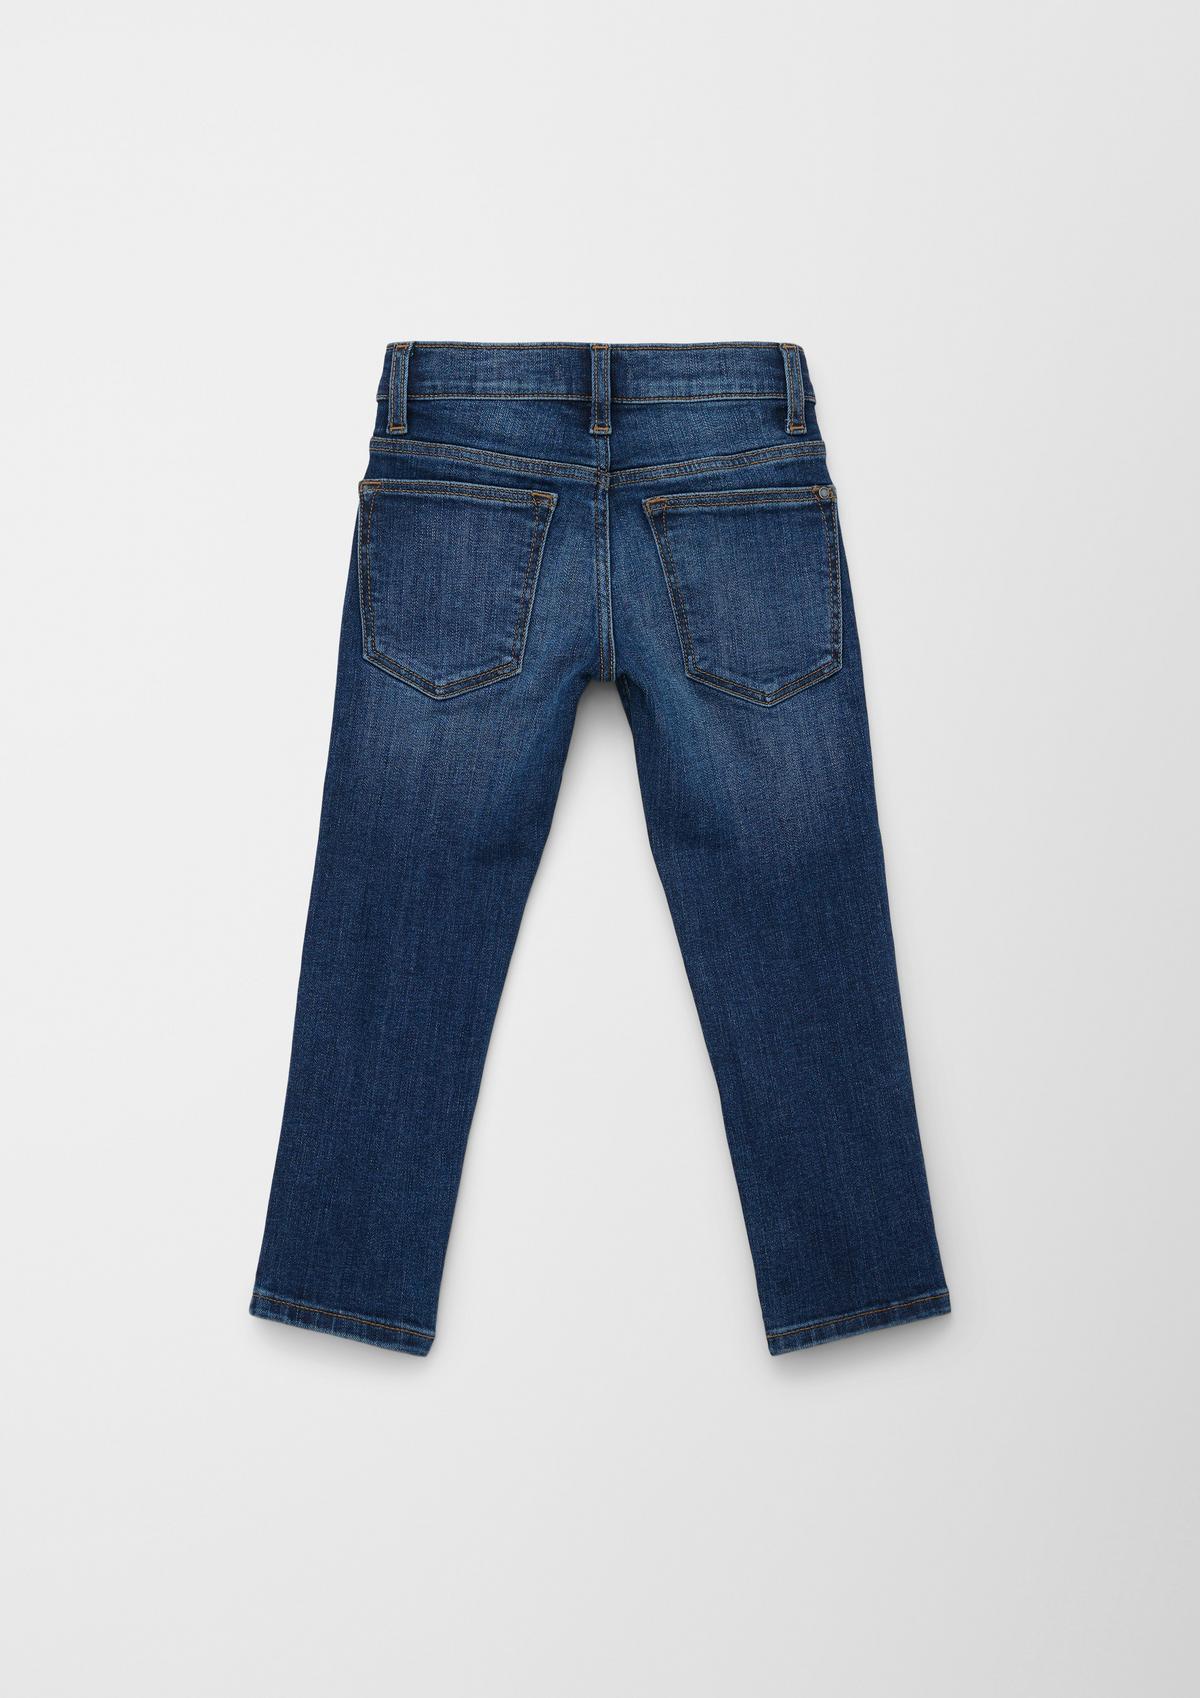 s.Oliver Brad: Width-adjustable jeans